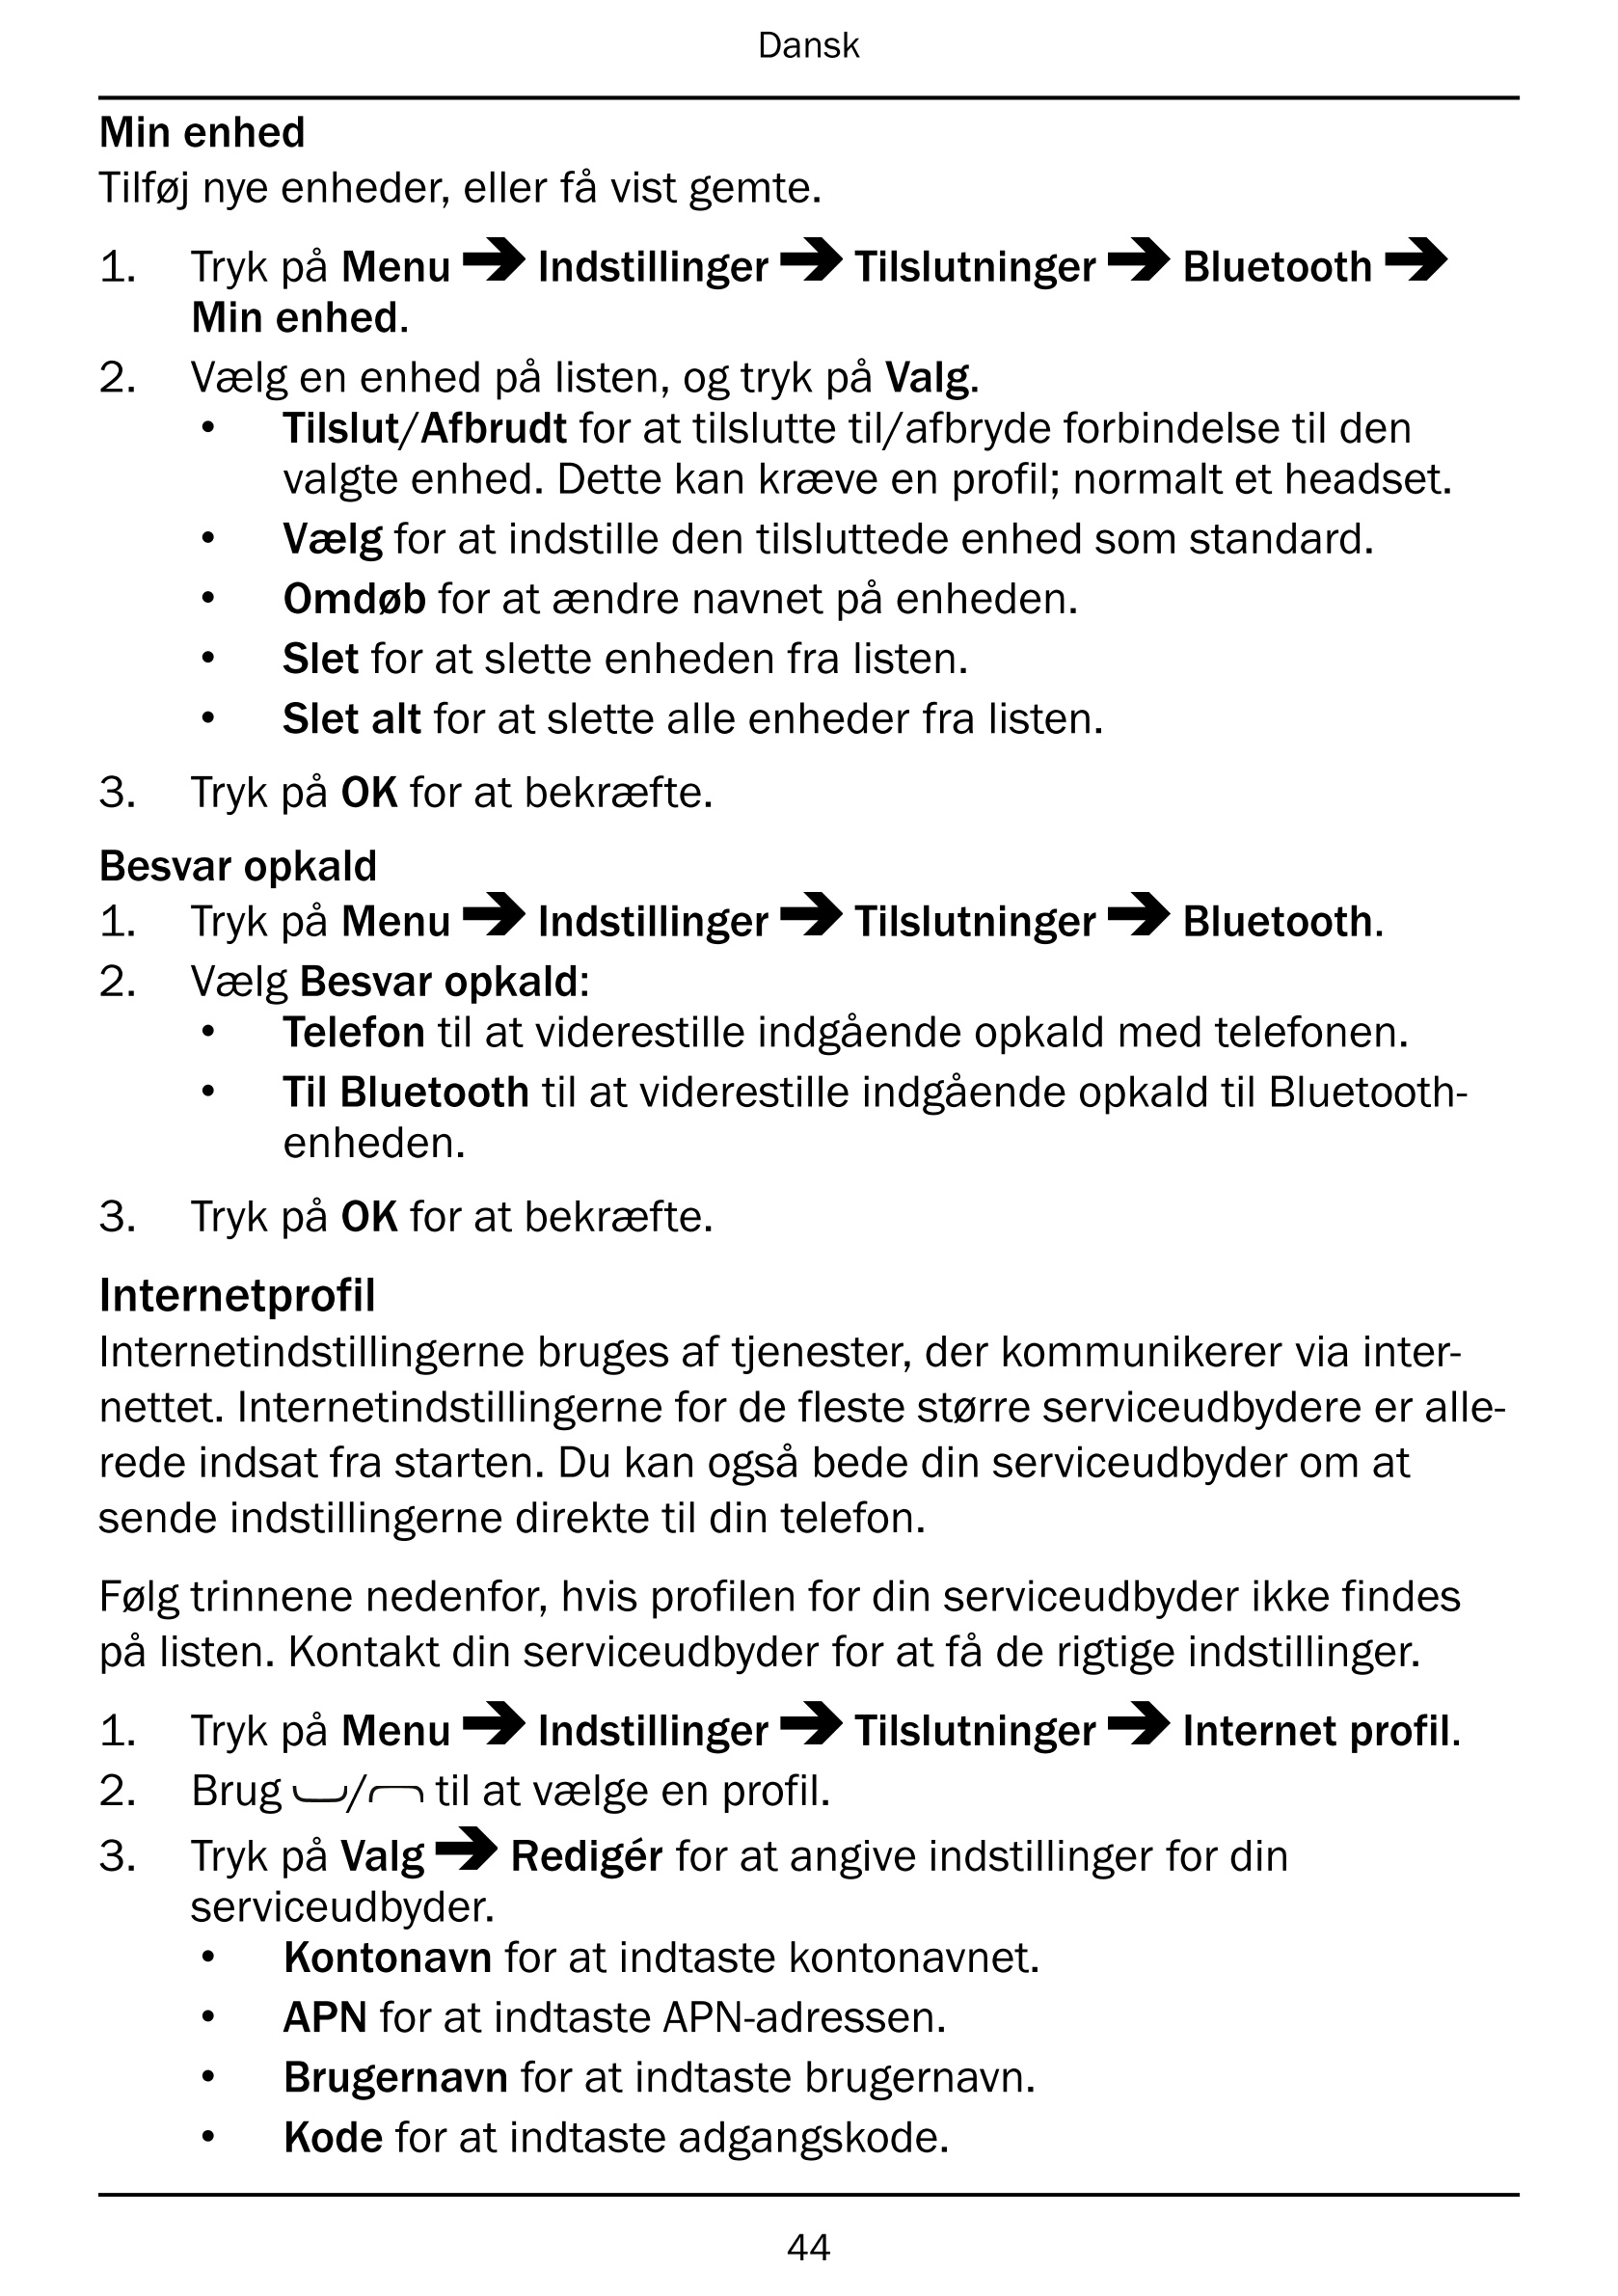 Dansk
Min enhed
Tilføj nye enheder, eller få vist gemte.
1.     Tryk på Menu Indstillinger Tilslutninger Bluetooth
Min enhed.
2.